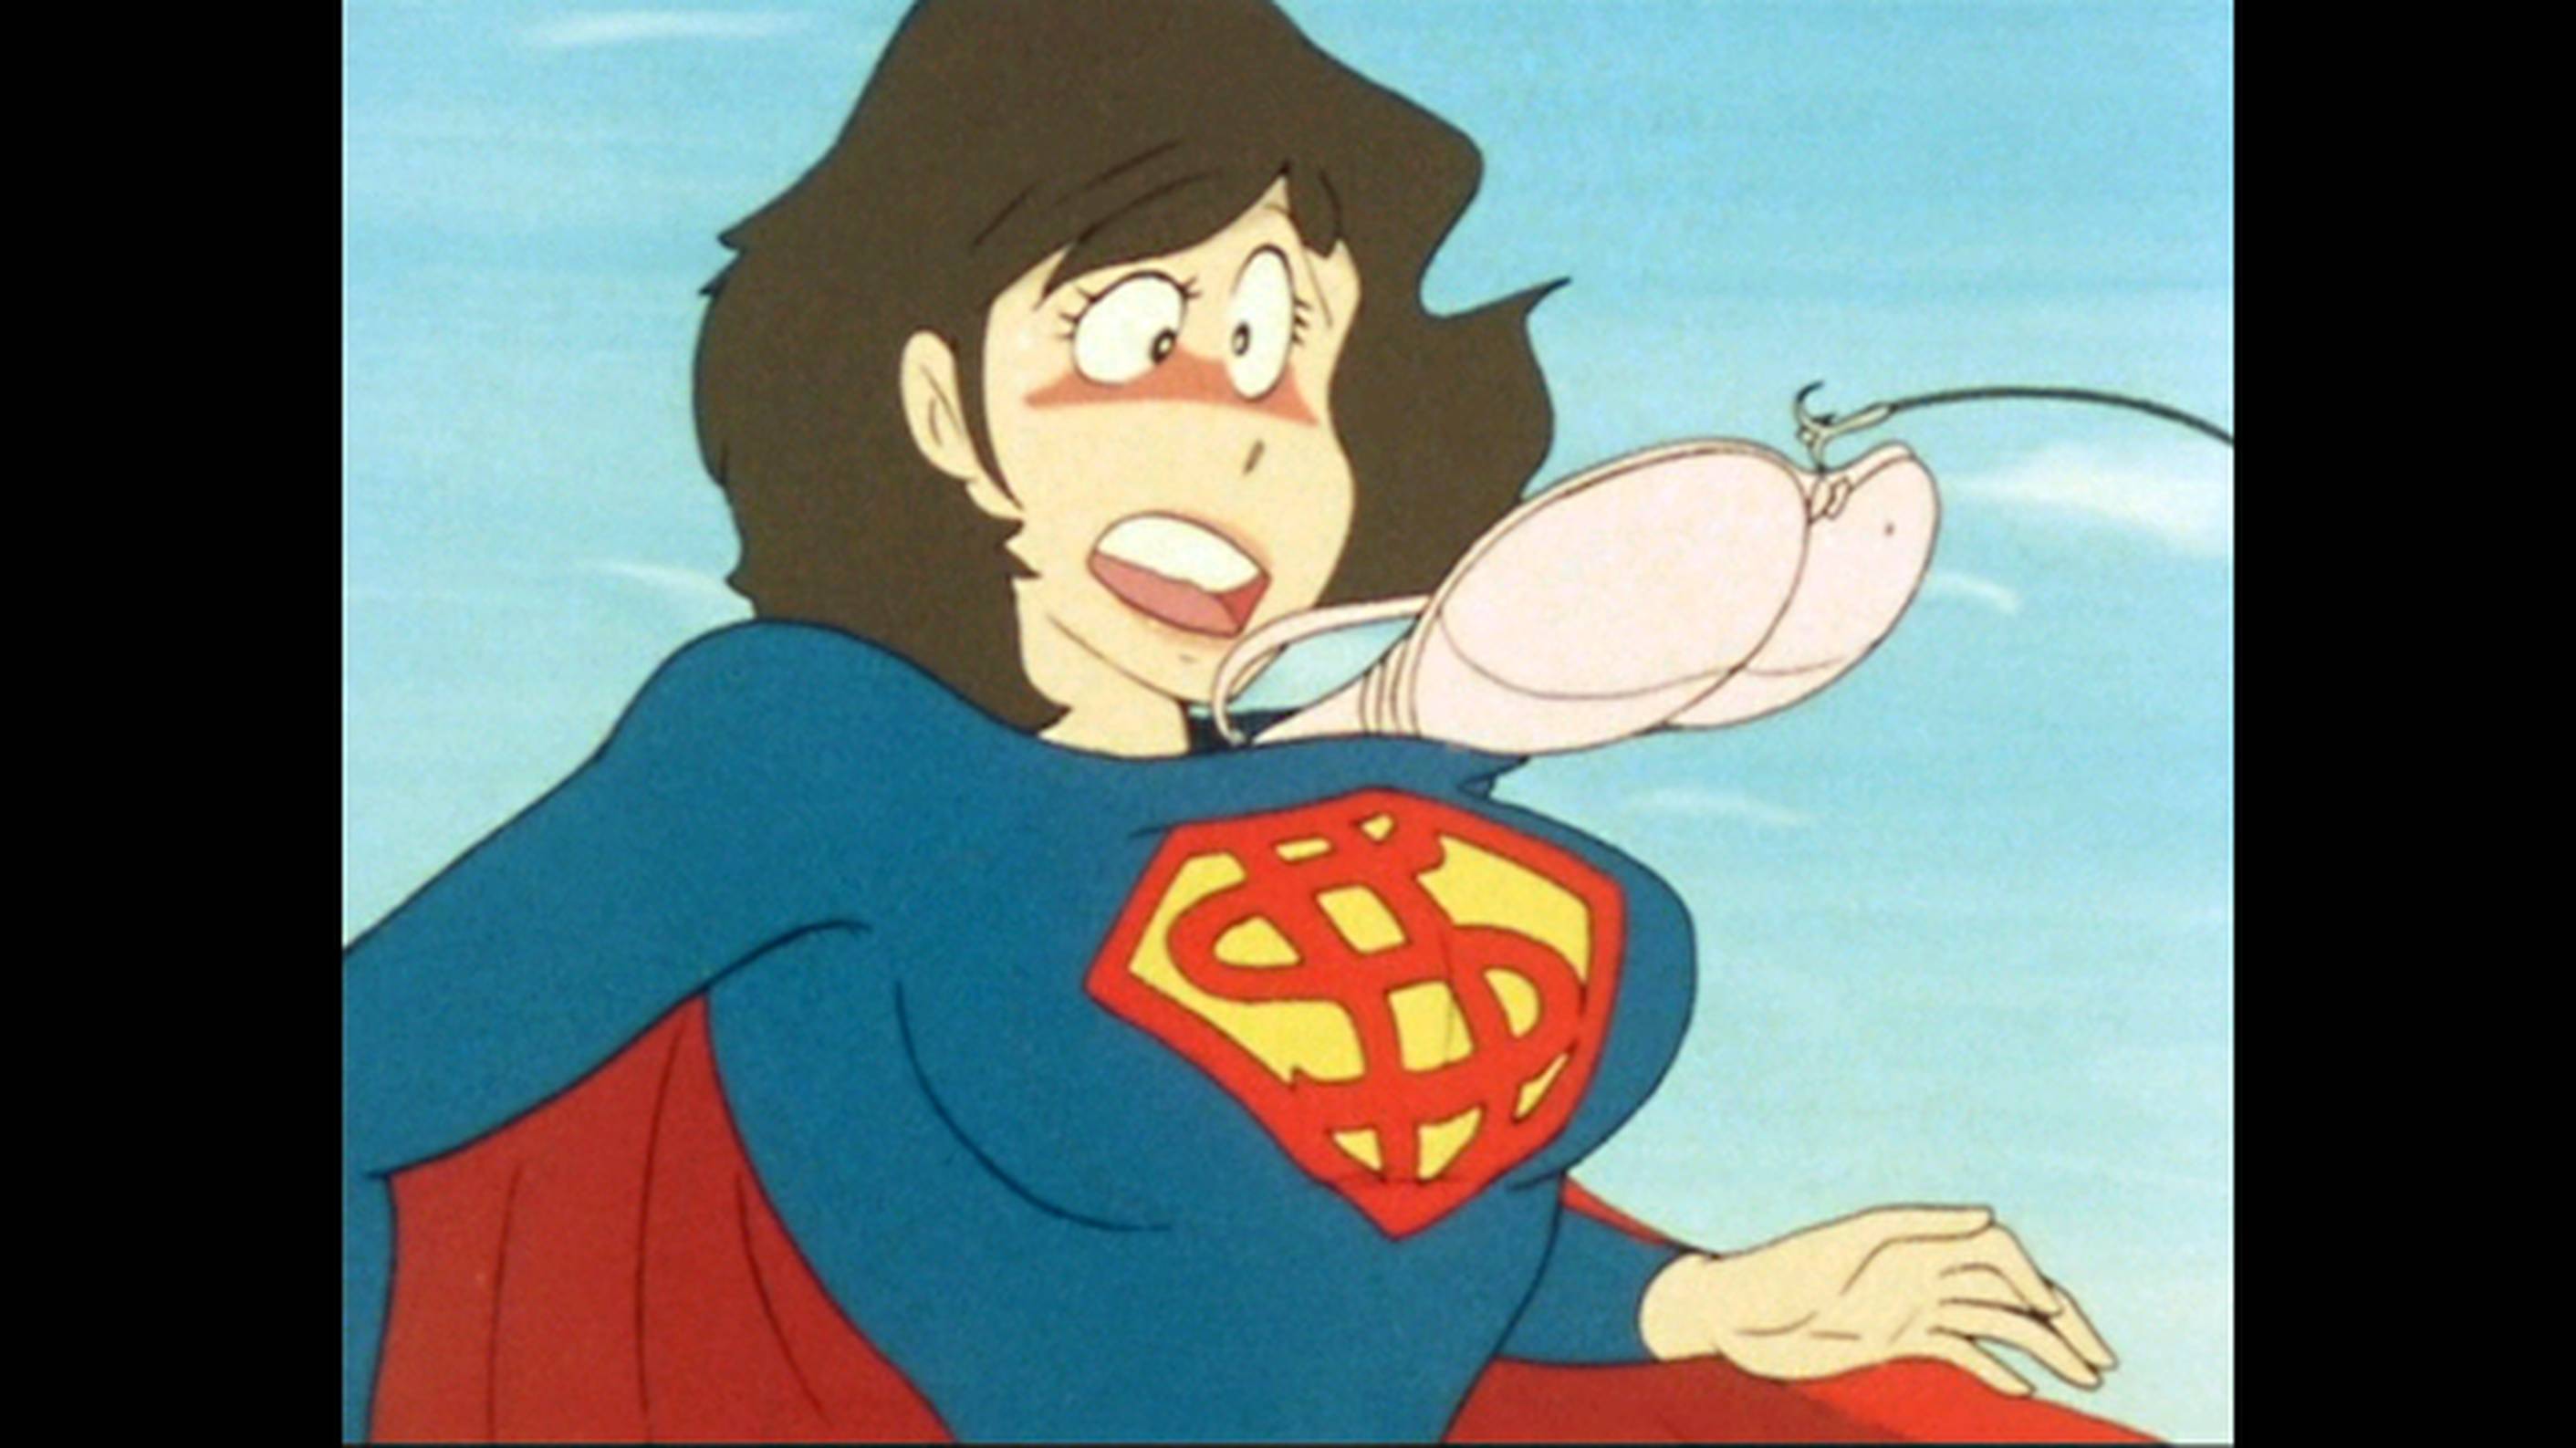 ルパン三世 Part2 第94話 ルパン対スーパーマン アニメ 1977 の動画視聴 U Next 31日間無料トライアル